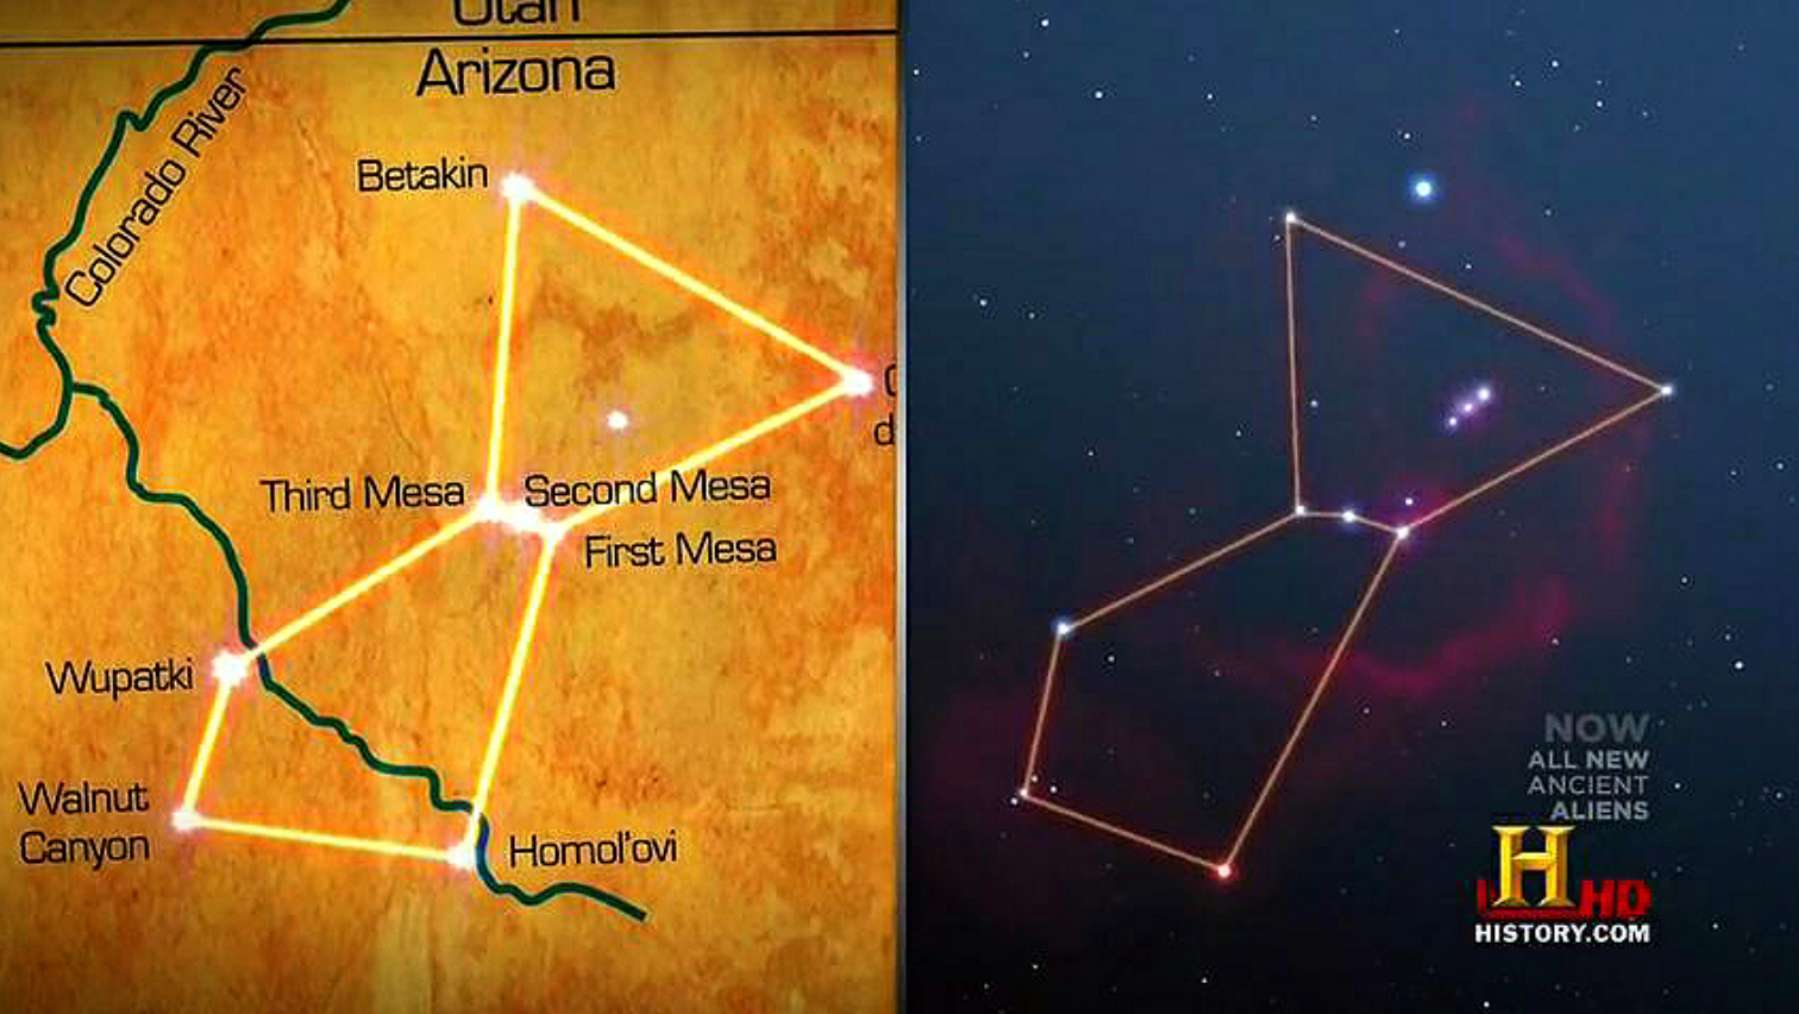 De drie Hopi Mesa's sluiten "perfect" aan bij het sterrenbeeld Orion